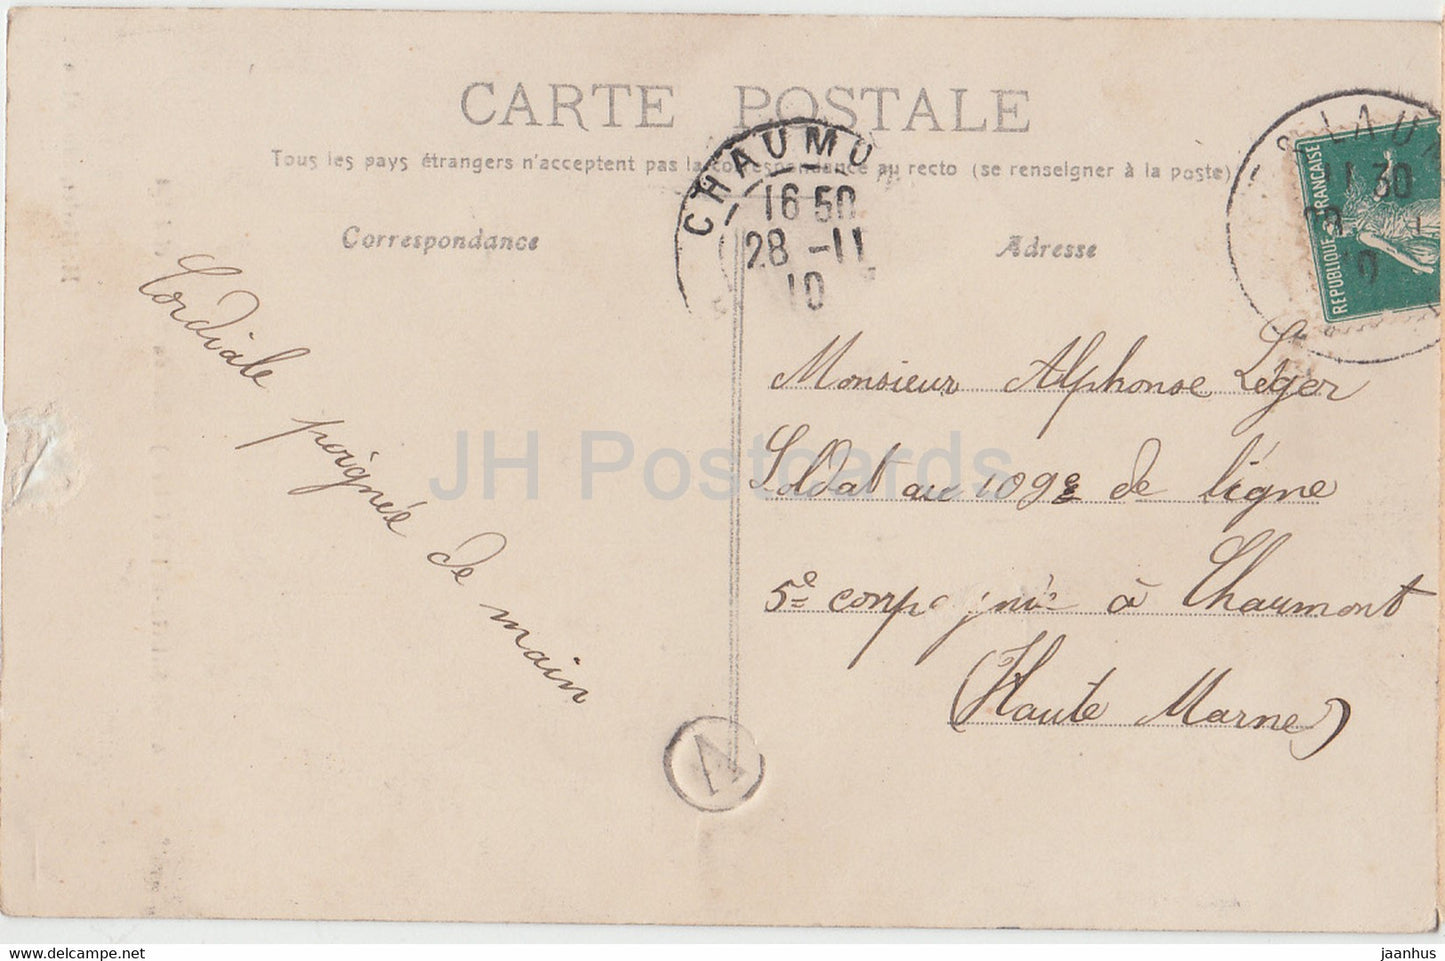 Alise Sainte Reine - Rue du Miroir - core est - alte Postkarte - 1910 - Frankreich - gebraucht